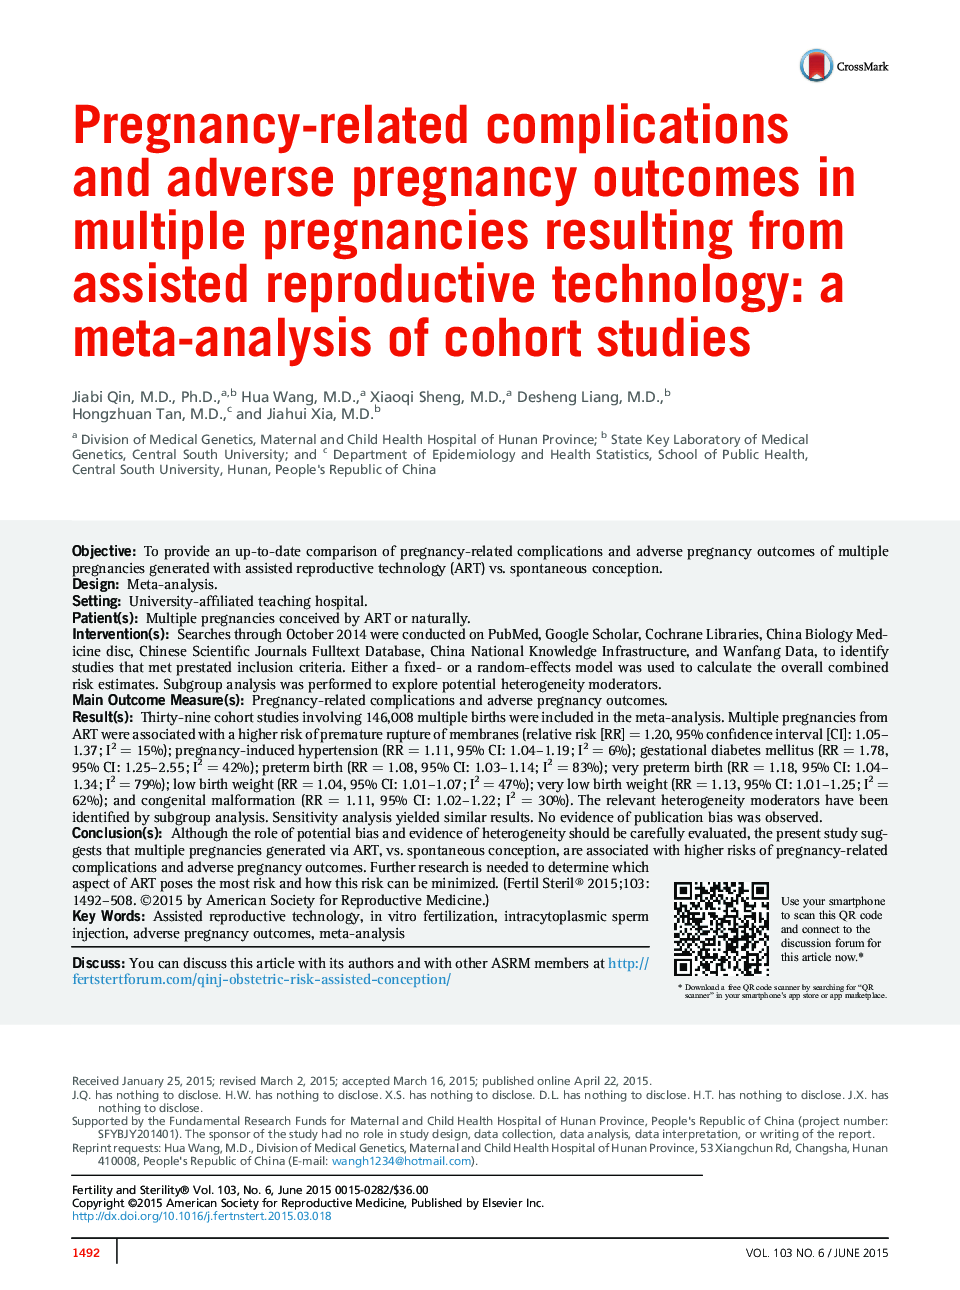 عوارض ناشی از بارداری و پیامدهای بارداری نامطلوب در حاملگی های چندگانه ناشی از تکنولوژی کمک باروری: یک متاآنالیز مطالعات کوهورت 